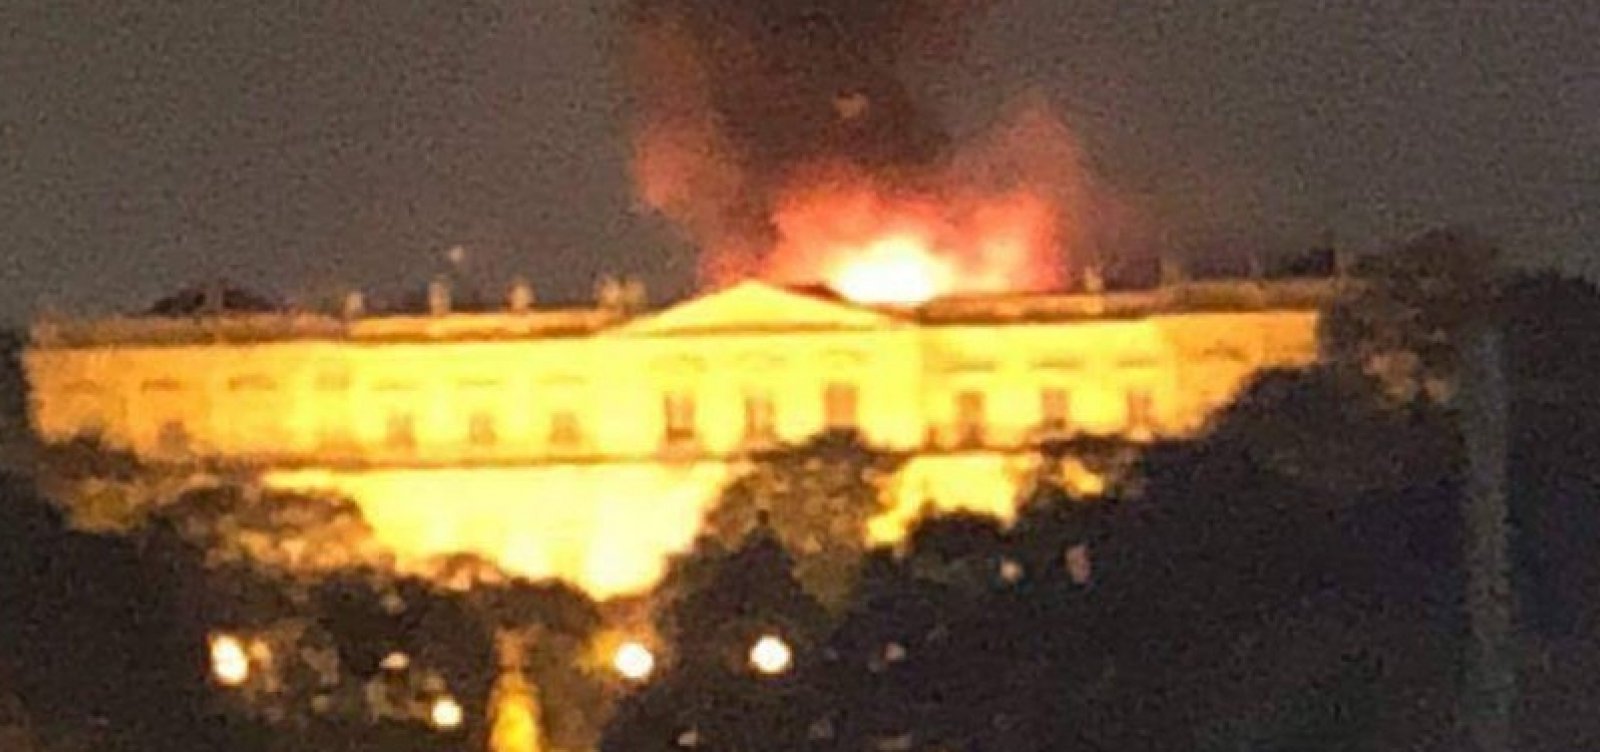 Incêndio de grandes proporções atinge Museu Nacional no Rio de Janeiro